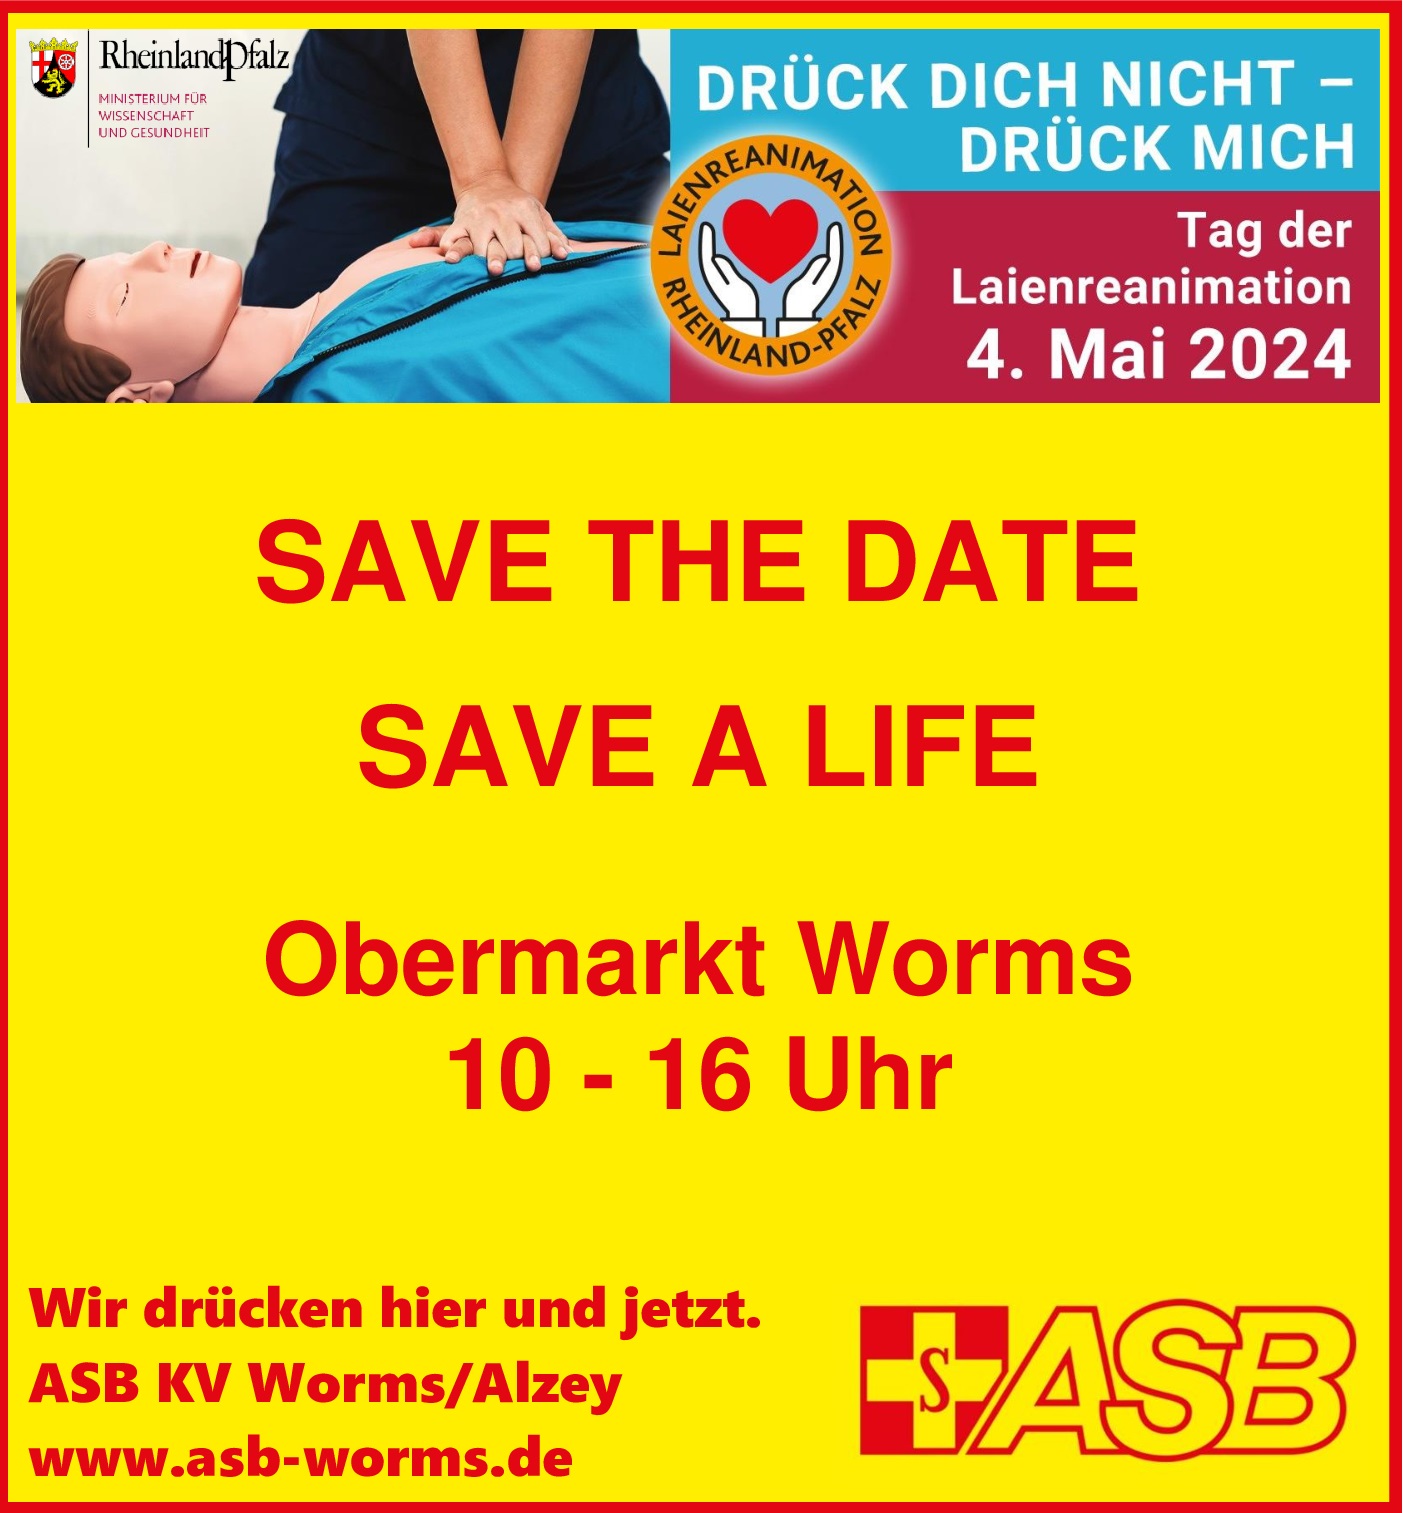 asb-worms-projekte-2024-tag-der-laienreanimation-rlp-2024-1.jpg